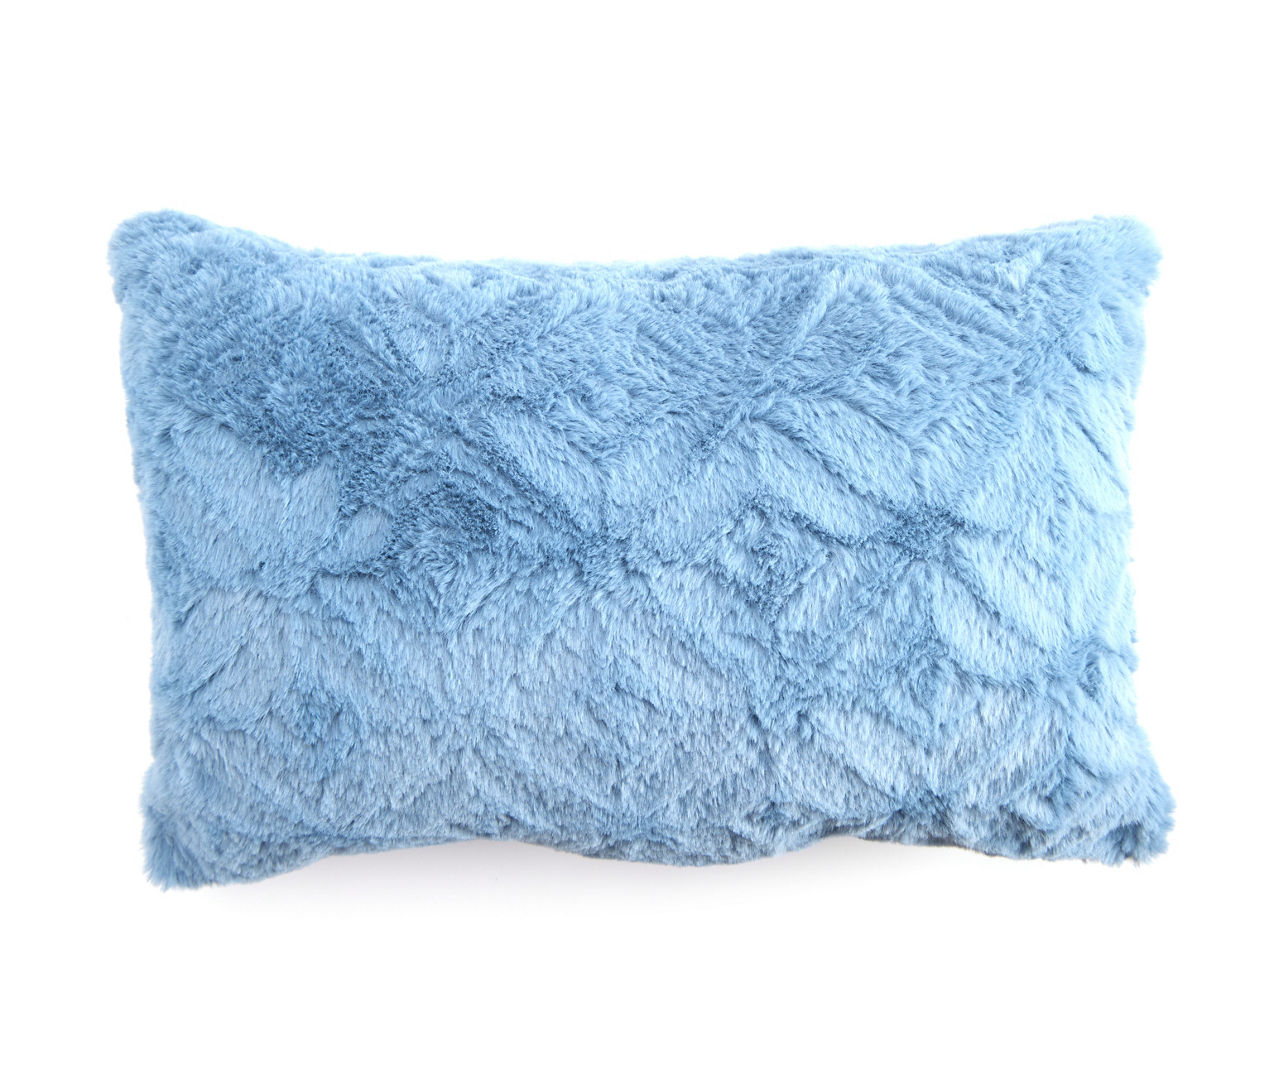  Smile of hope, Blue Decorative Lumbar Throw Pillows